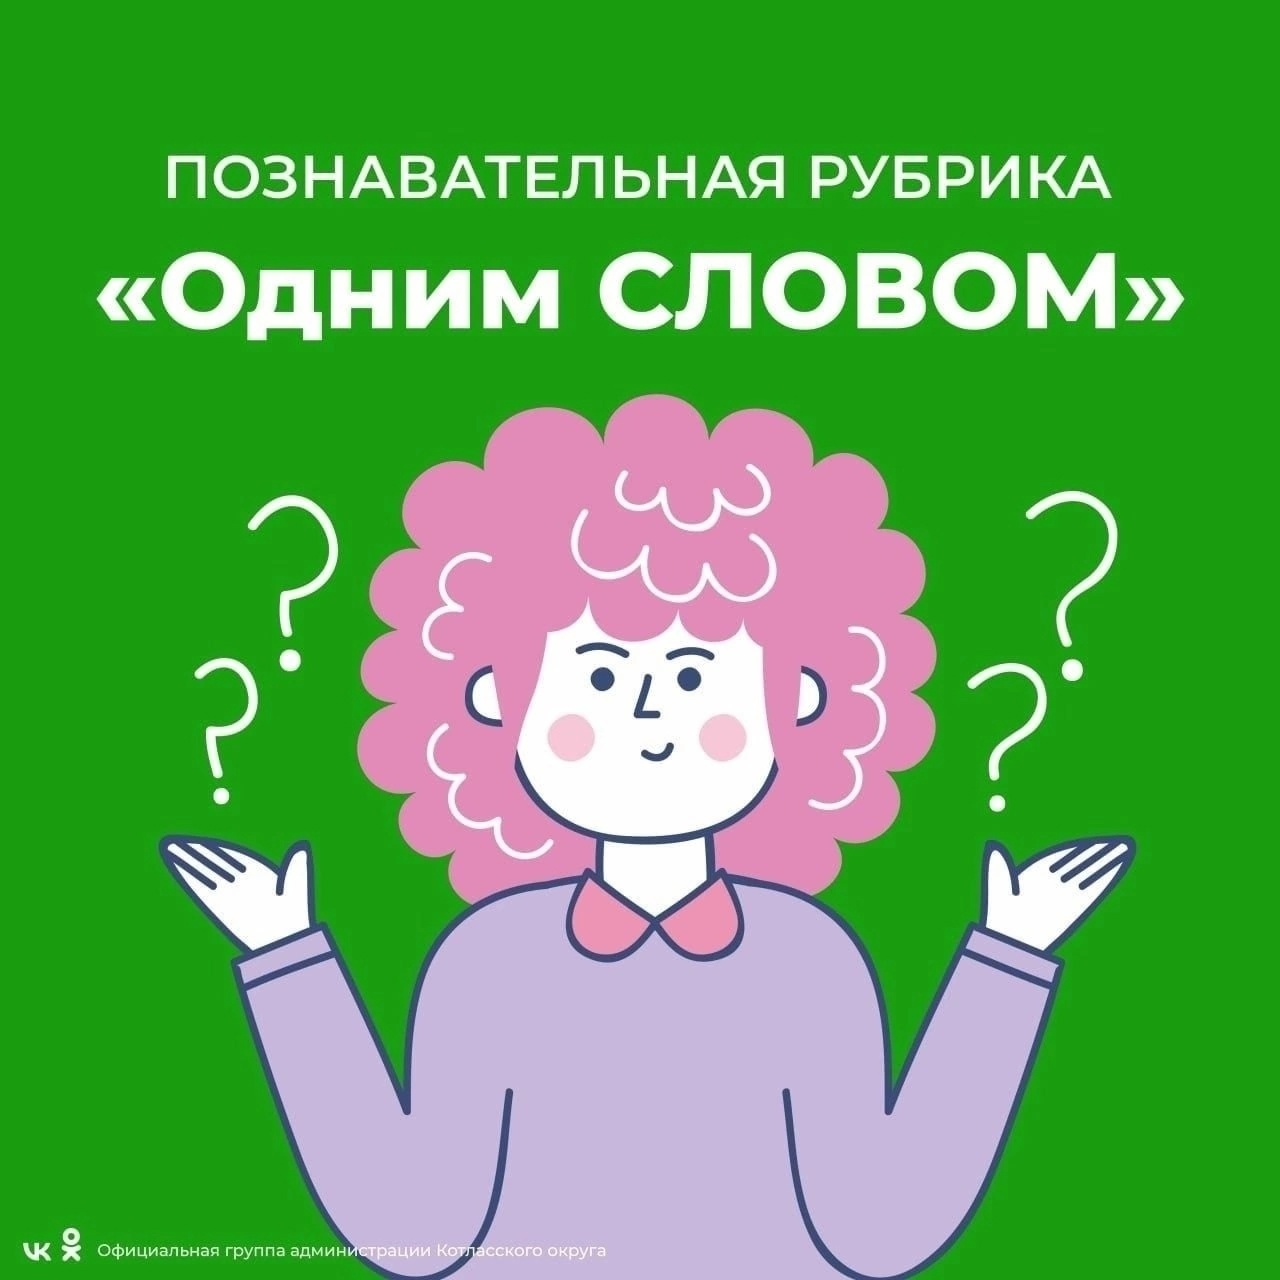 «Гоголем ходить» Как думаете, что означает это выражение?.